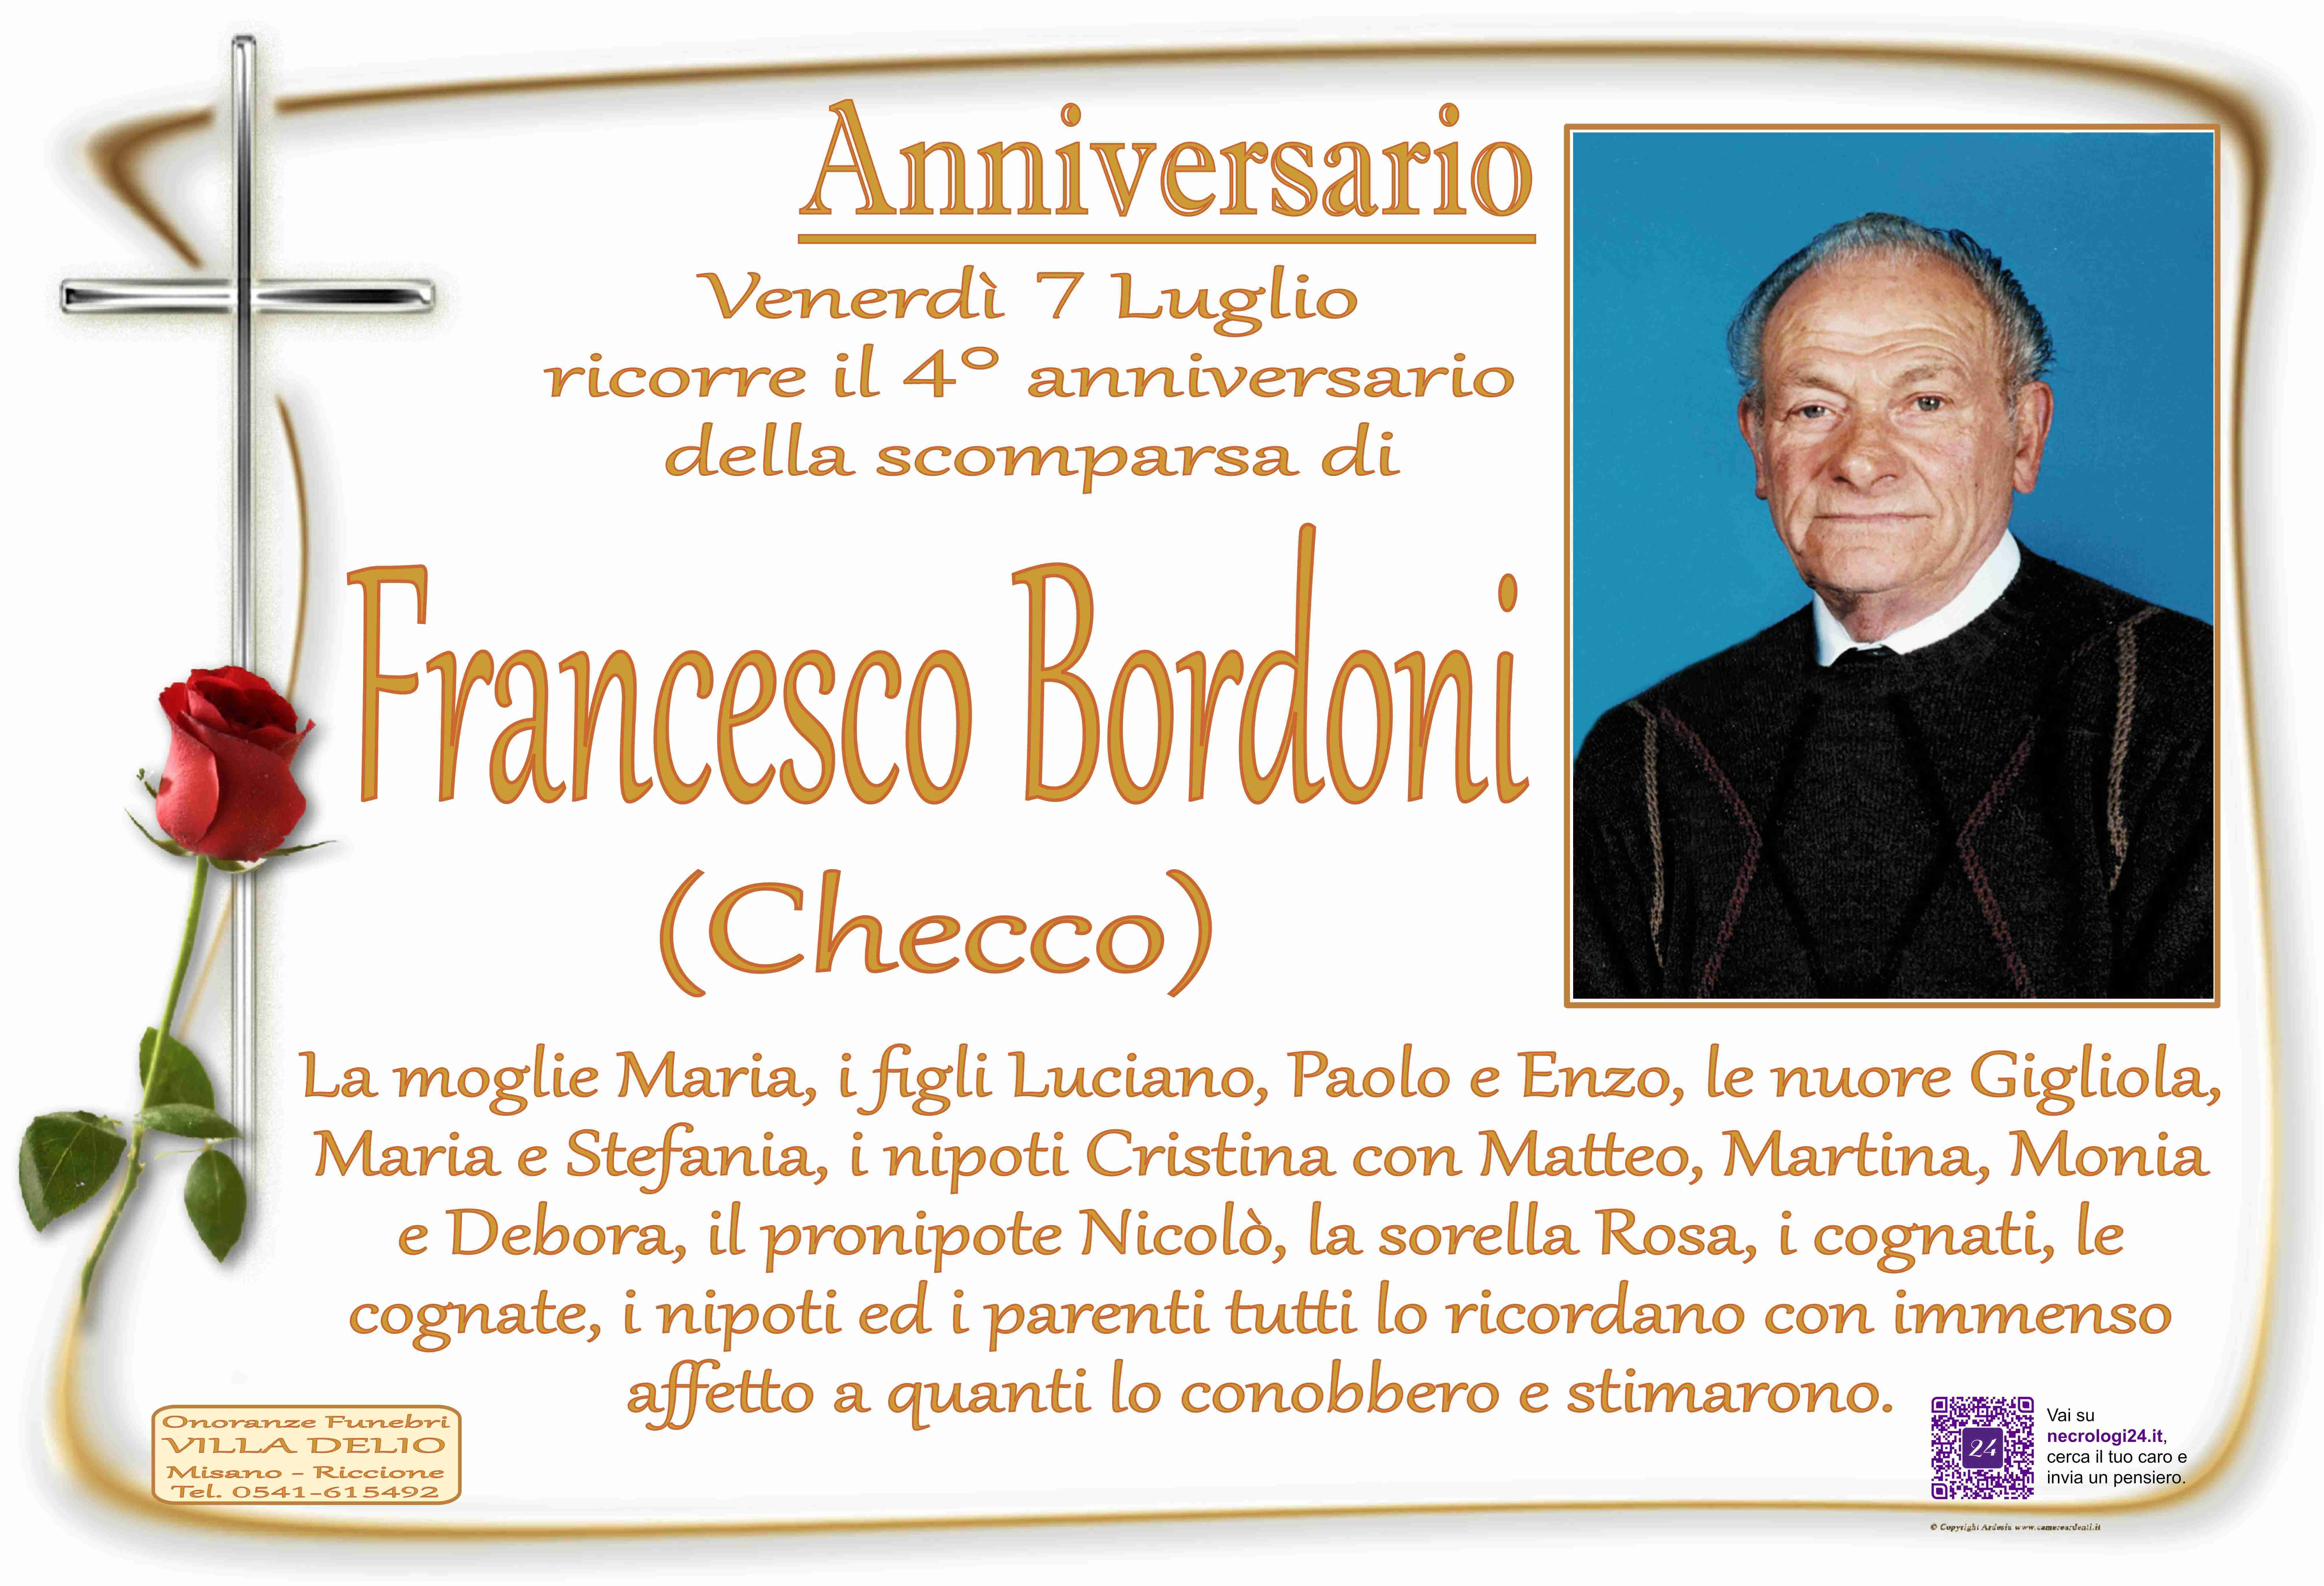 Francesco Bordoni (Checco)